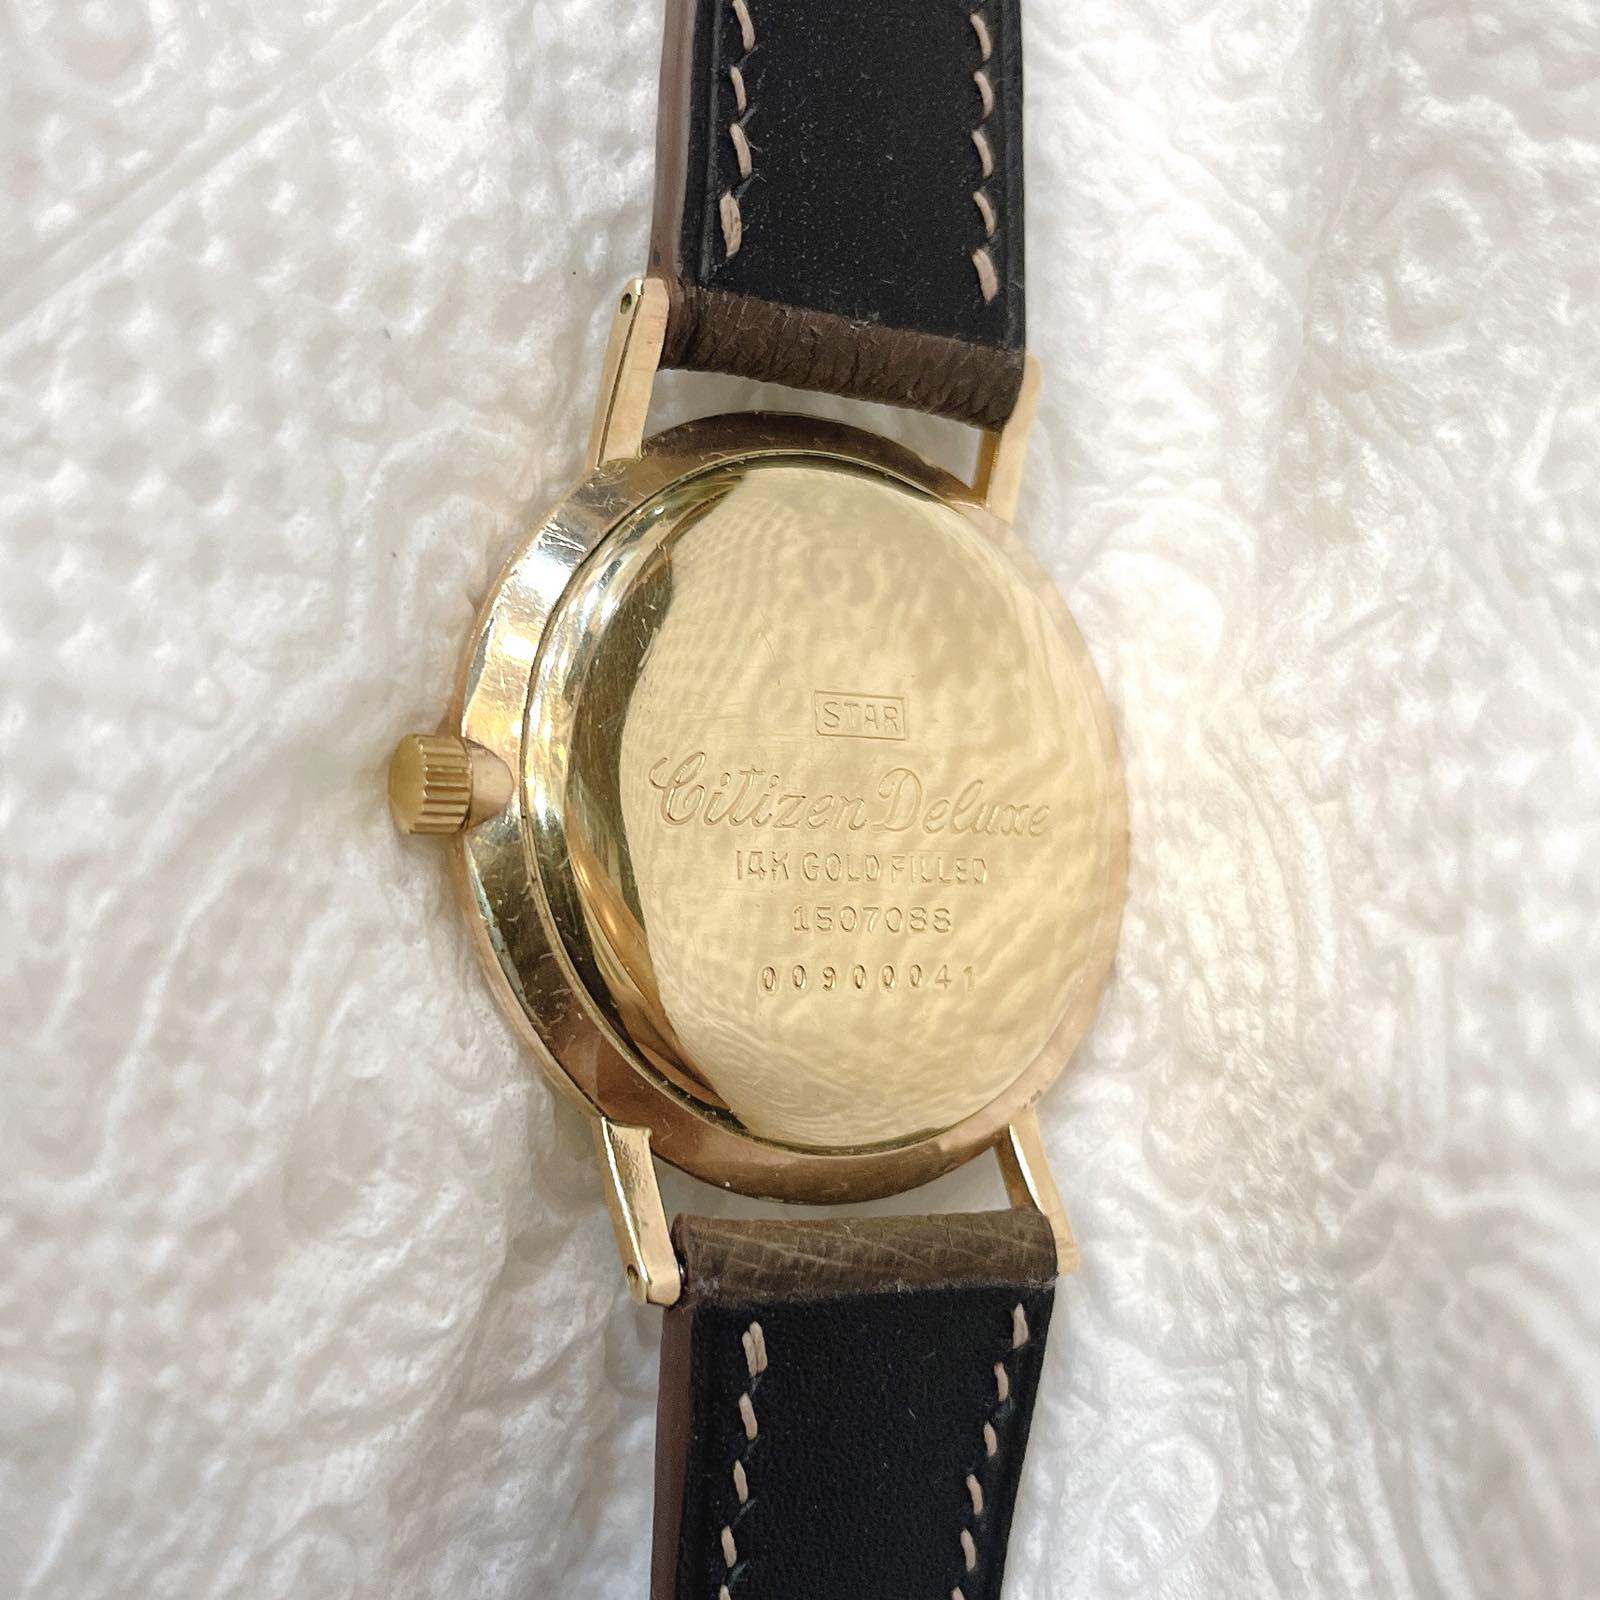 Đồng hồ cổ CITIZEN Deluxe lên dây bọc vàng 14k goldfilled chính hãng nhật bản